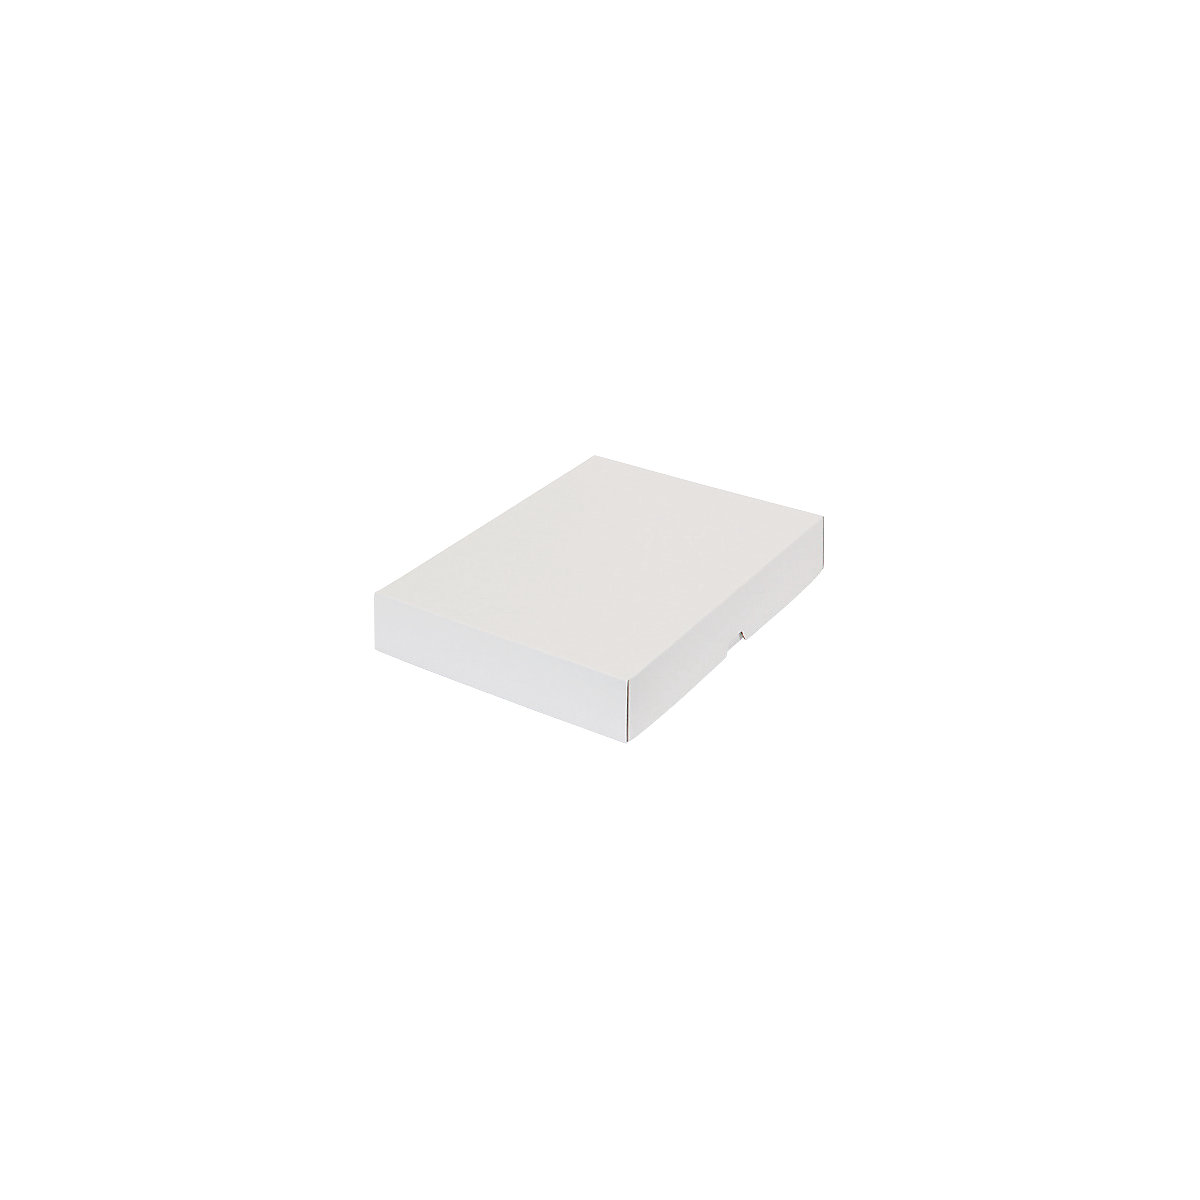 Stülpdeckelkarton, zweiteilig, Innenmaße 301 x 213 x 45 mm, A4, weiß, ab 30 Stk-20